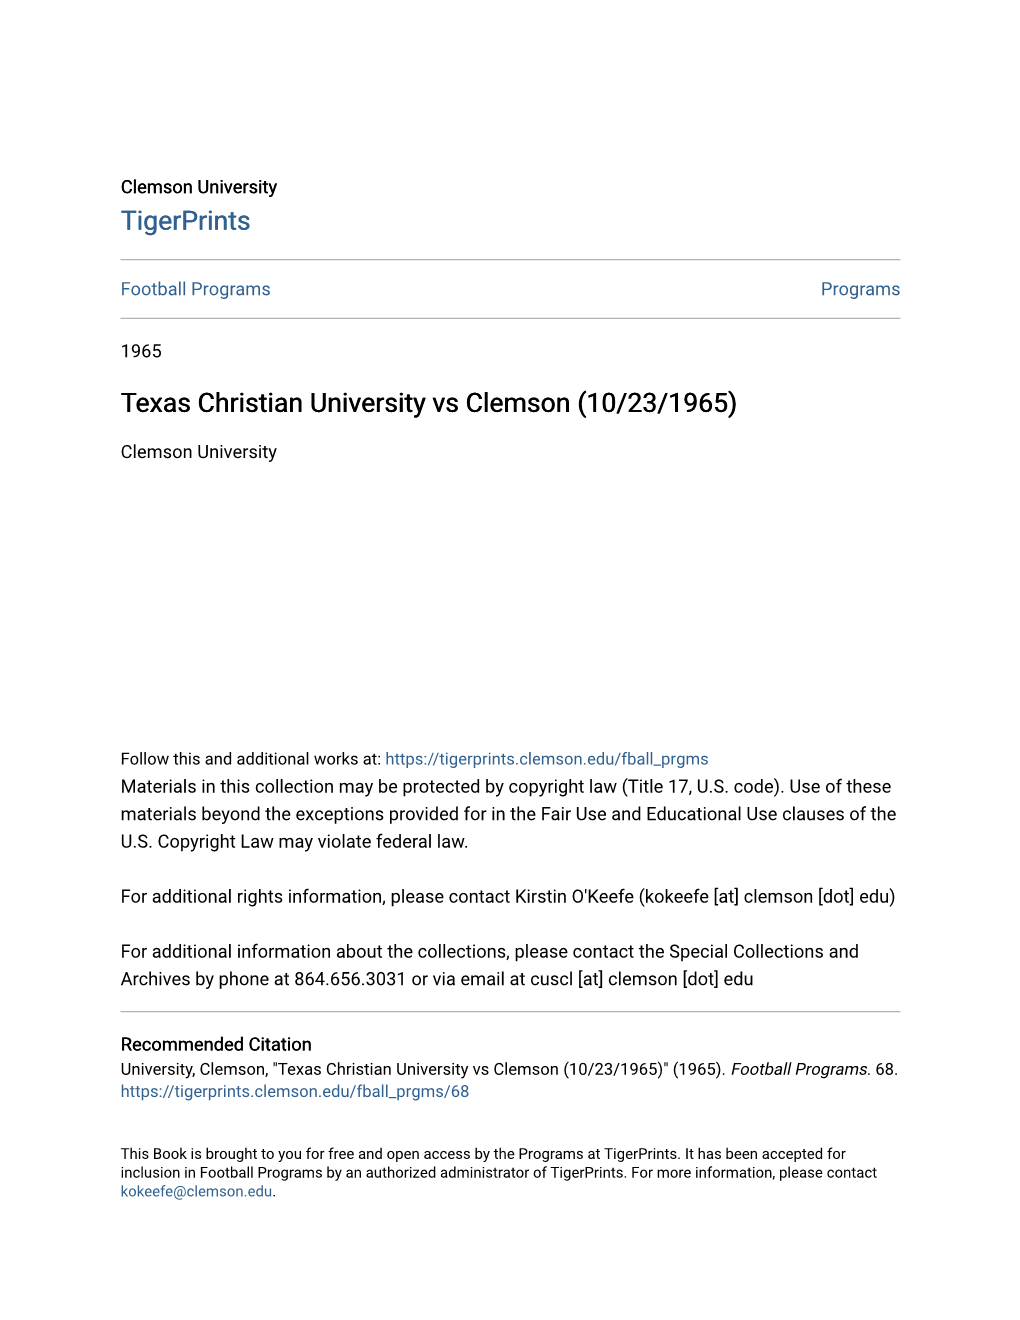 Texas Christian University Vs Clemson (10/23/1965)